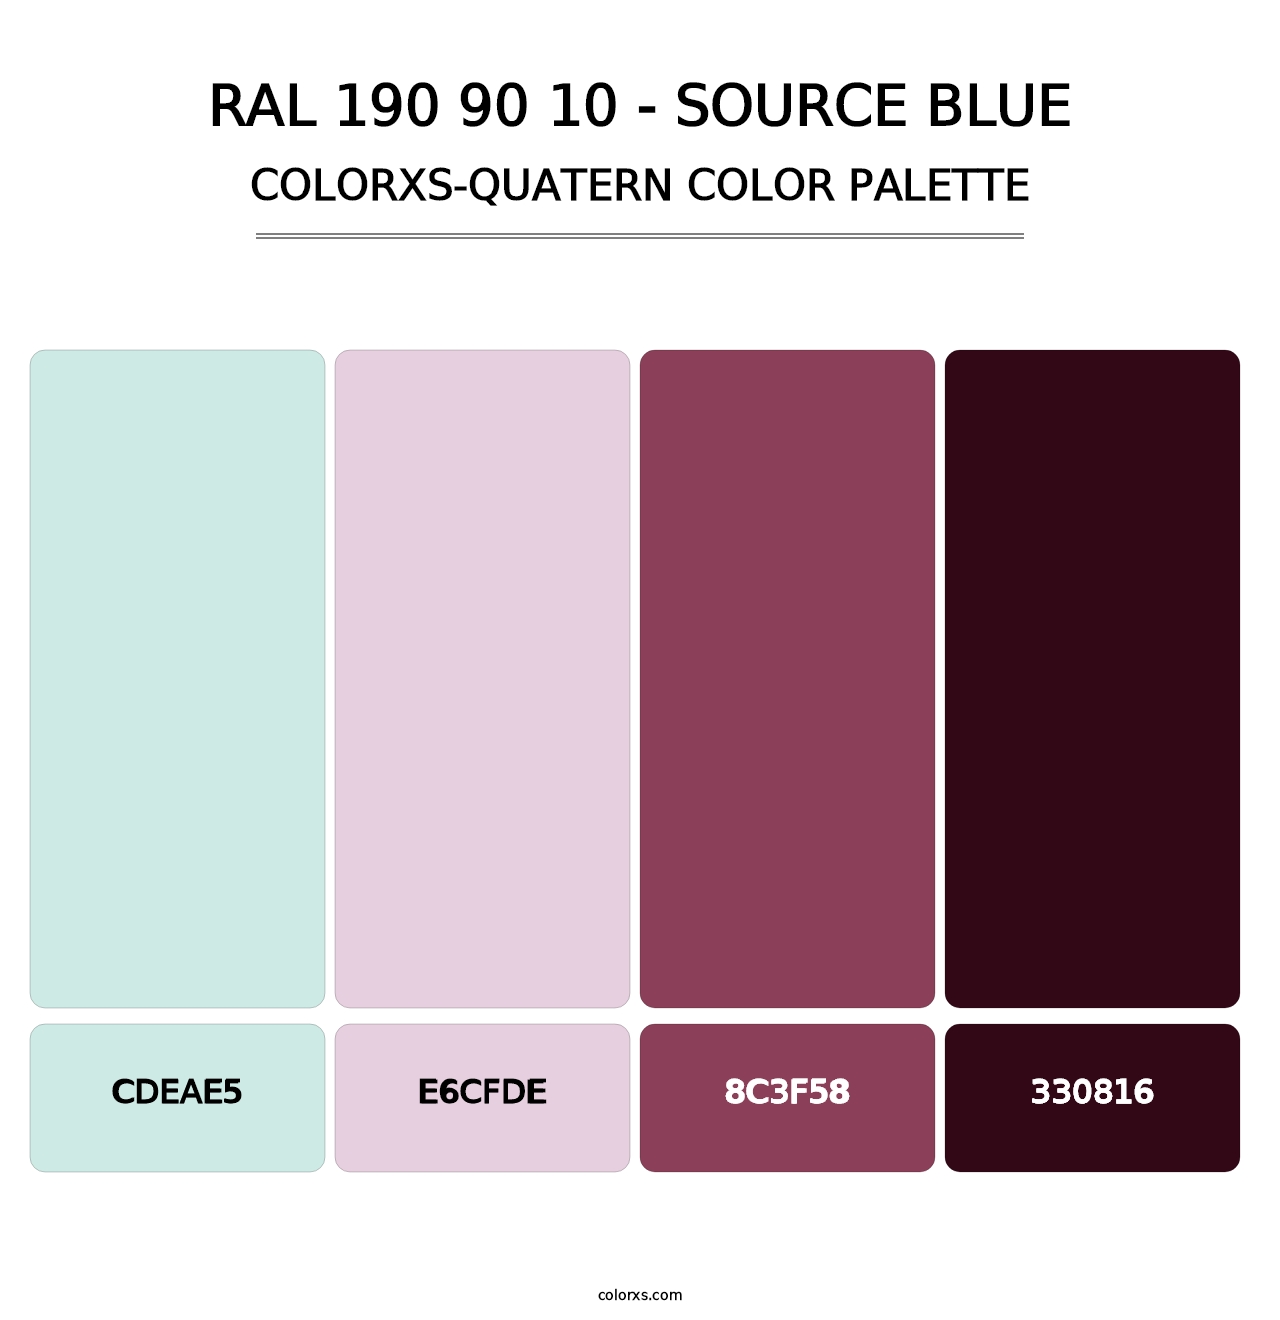 RAL 190 90 10 - Source Blue - Colorxs Quatern Palette